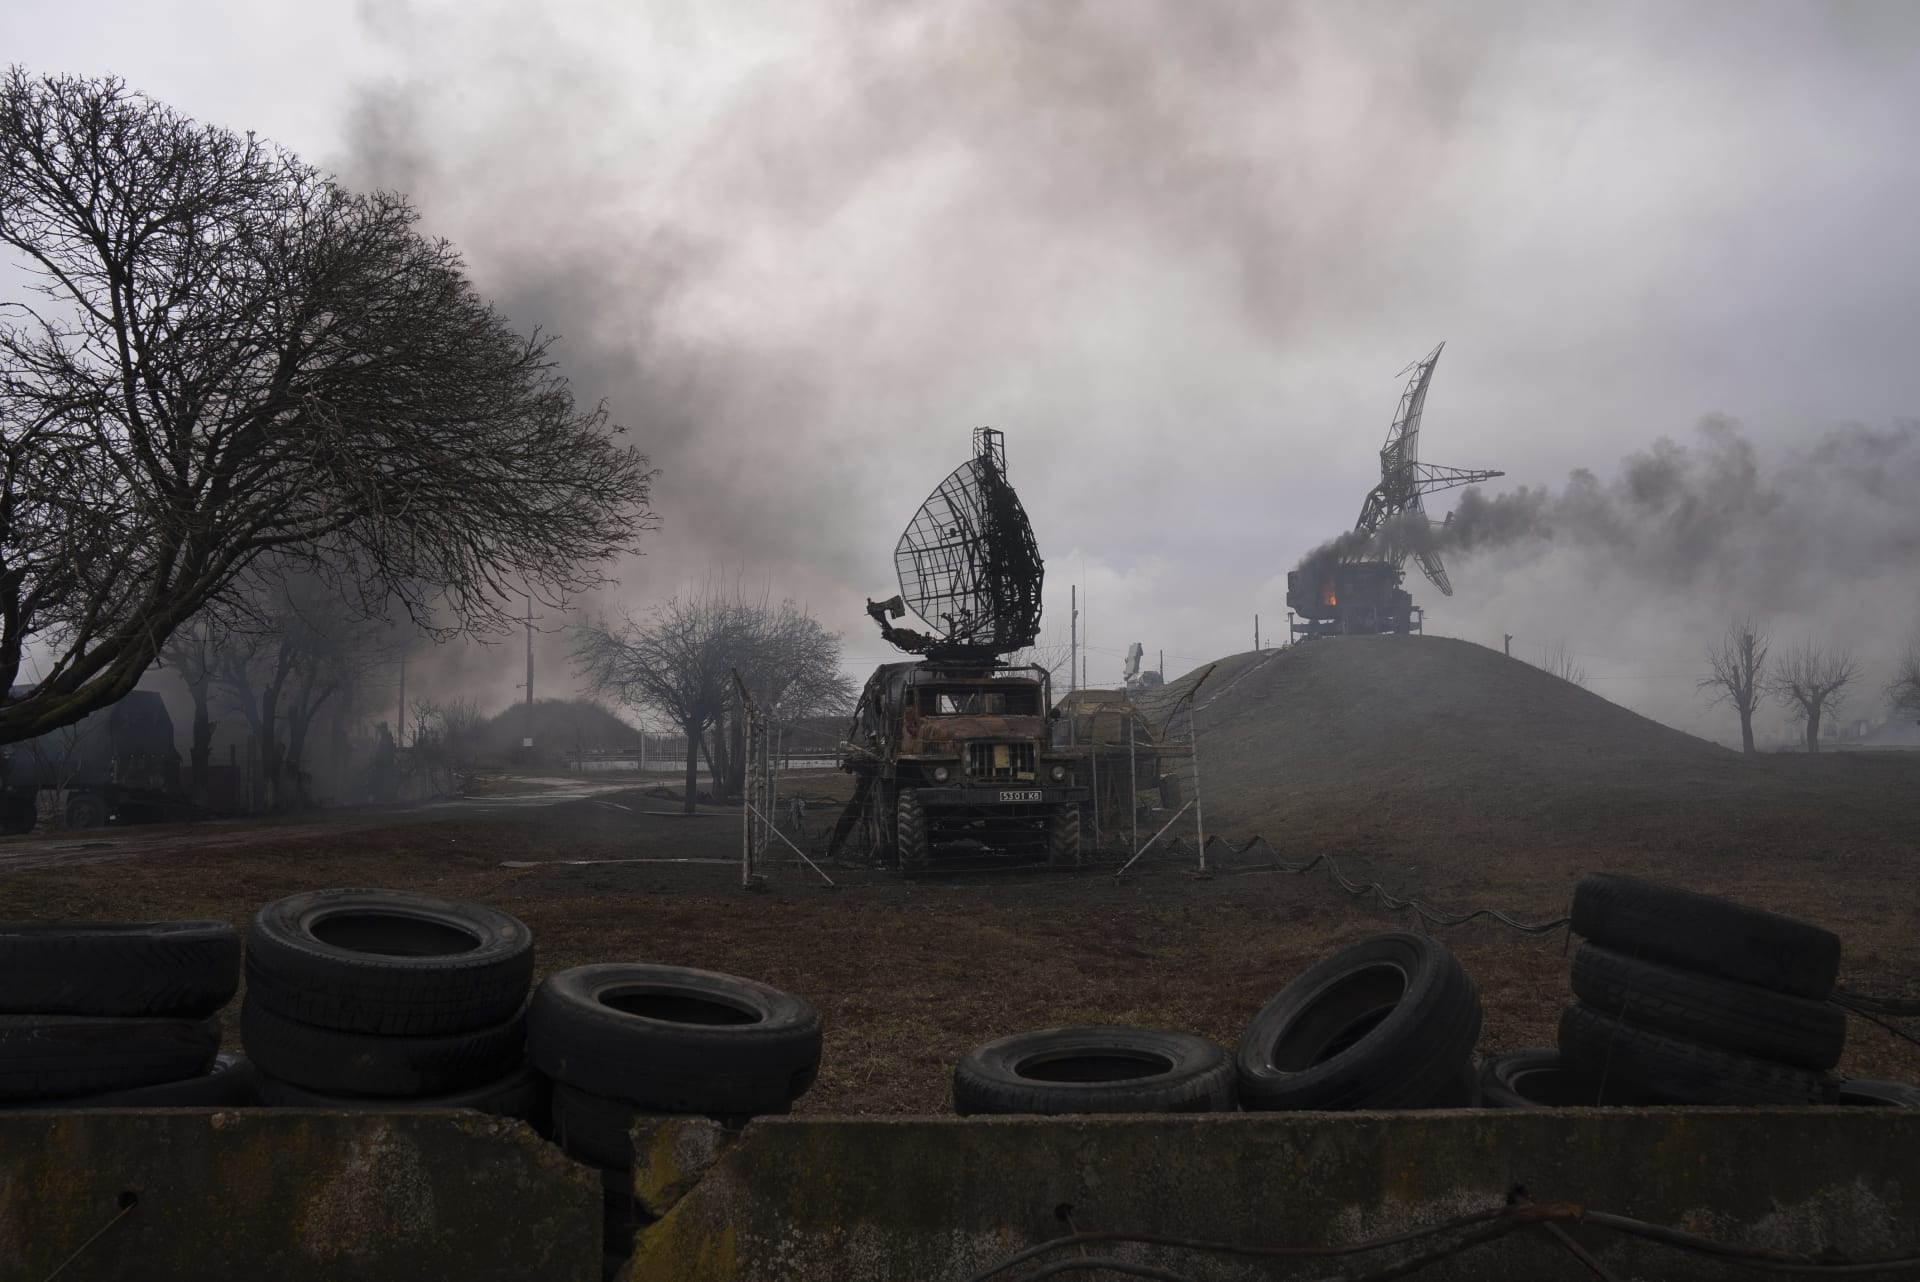 Kouř stoupající ze základny protivzdušné obrany po zjevném ruském úderu v Mariupolu